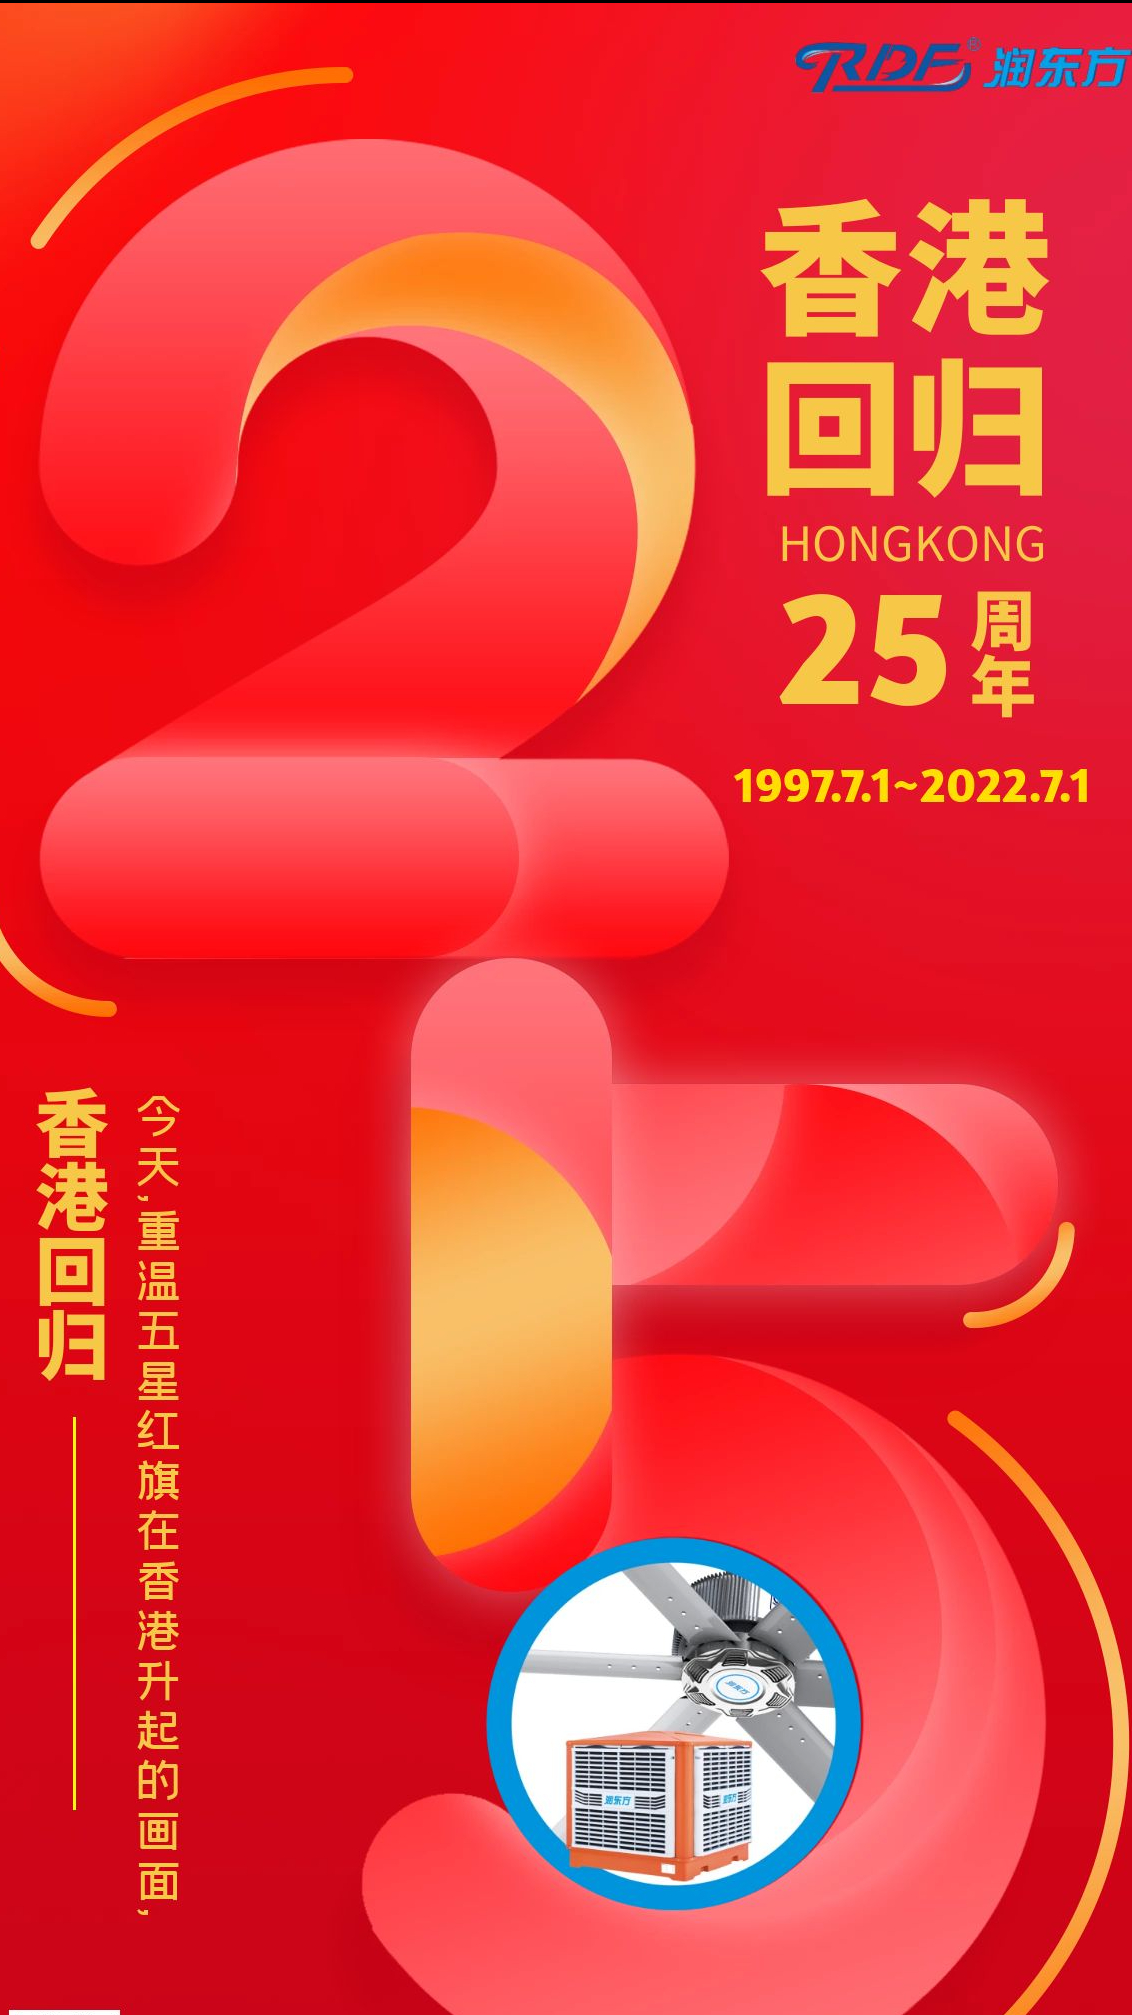 熱烈慶祝七一建黨節暨香港回歸25周年！不忘初心，牢記使命